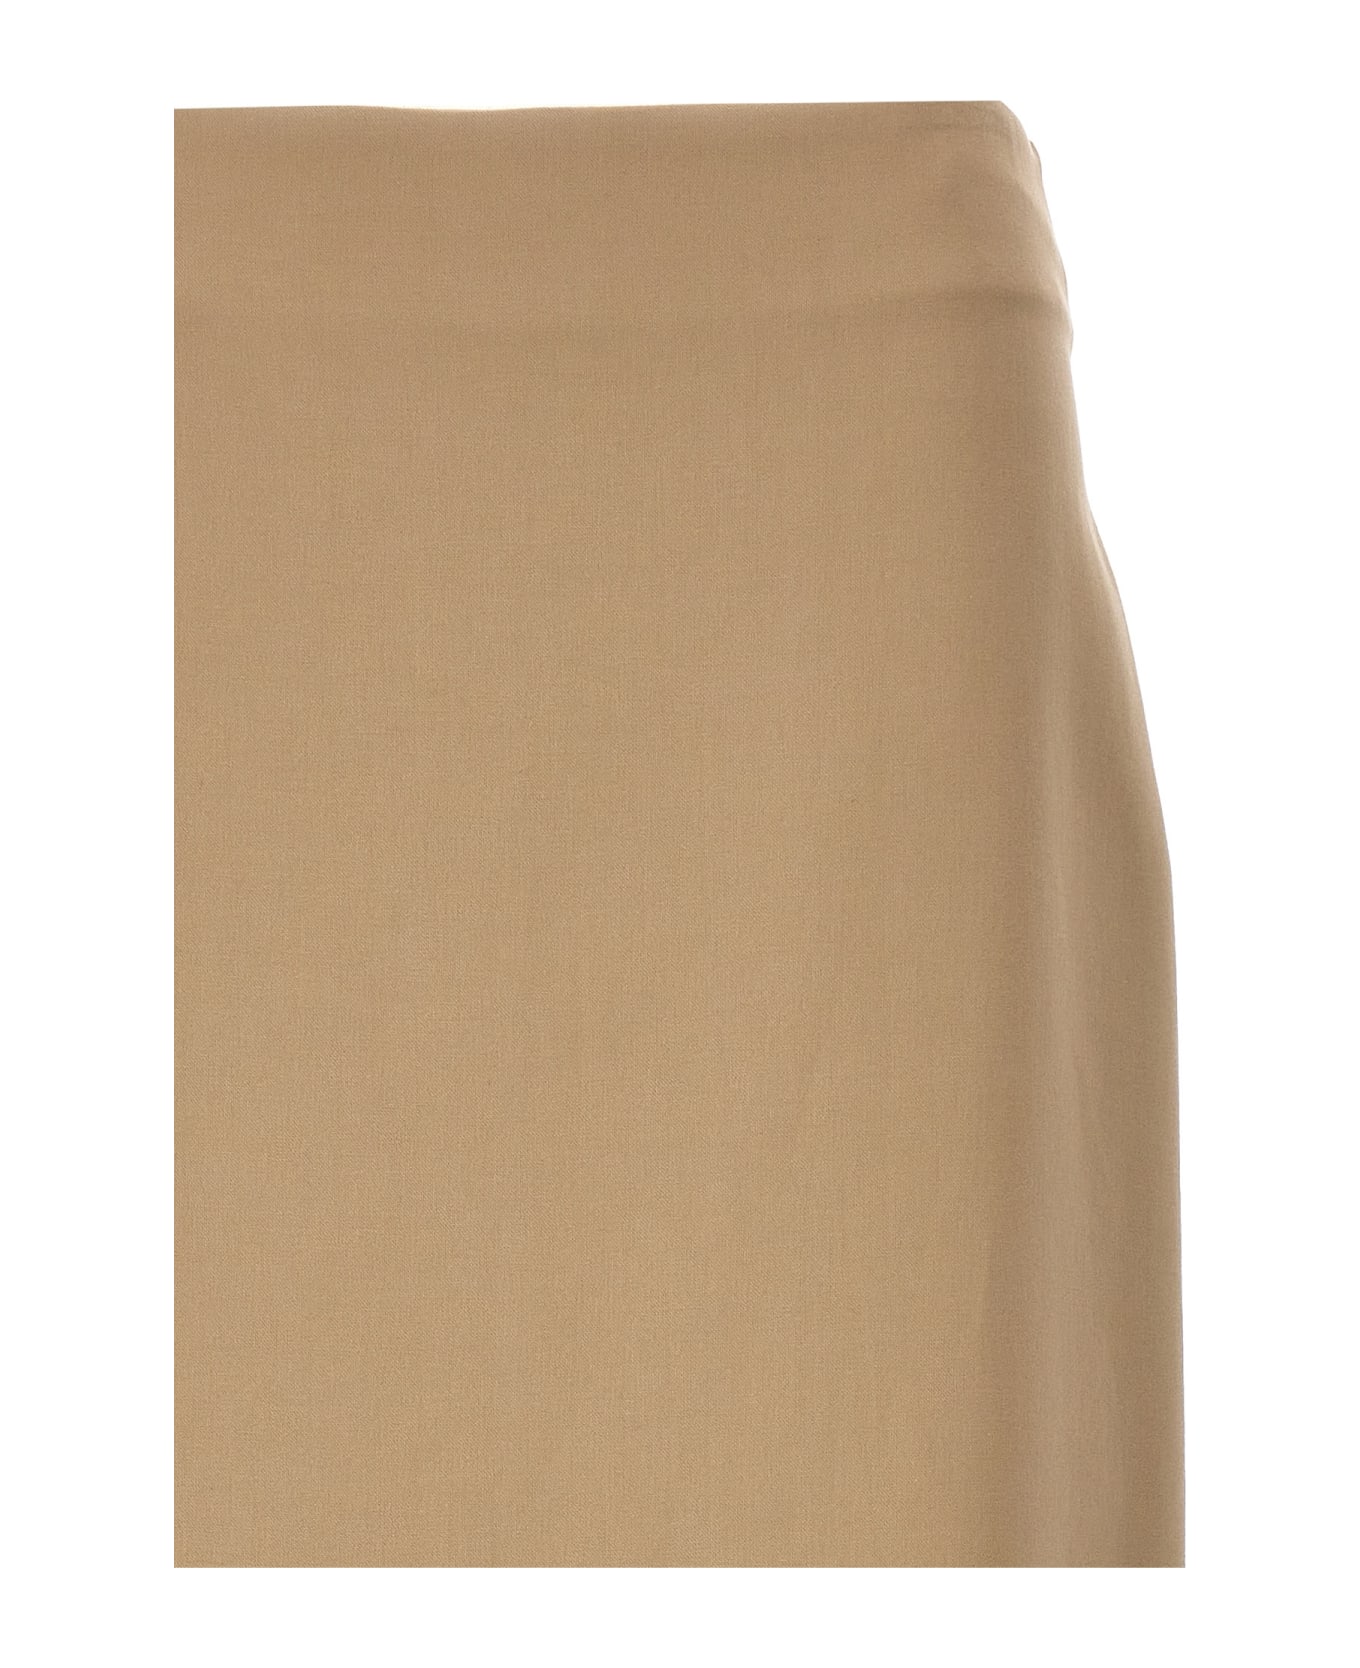 Brunello Cucinelli Slit Cotton Skirt - Beige